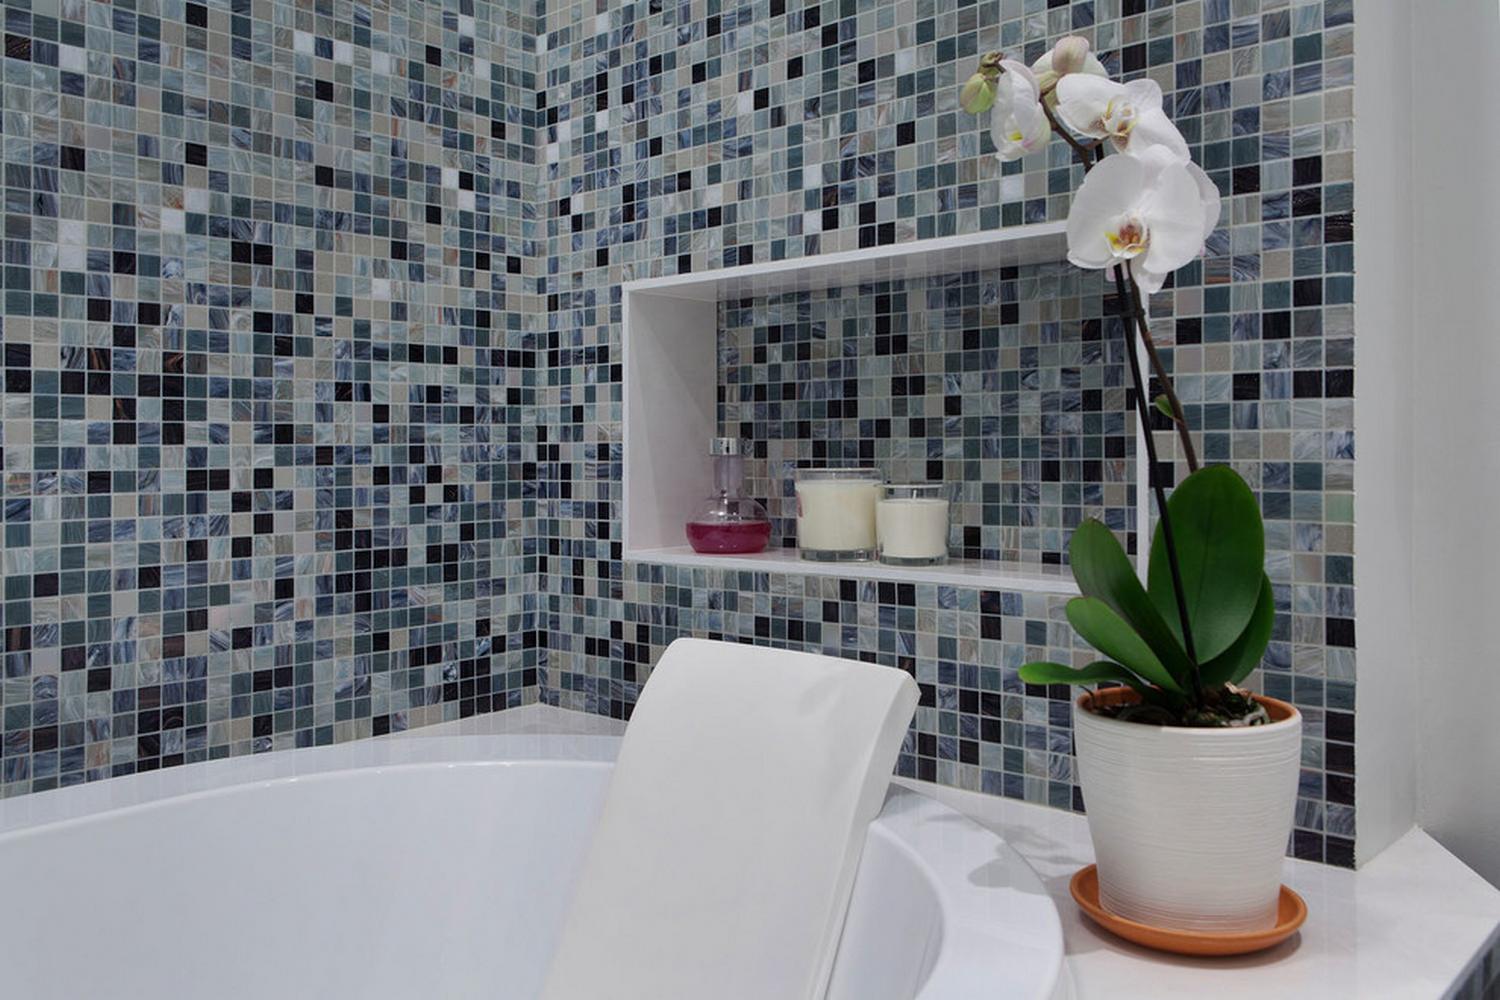 Mozaik fürdőszoba burkolat szürke és gyöngyház árnyalatokkal, modern szaniter, zuhanyfülke és kád